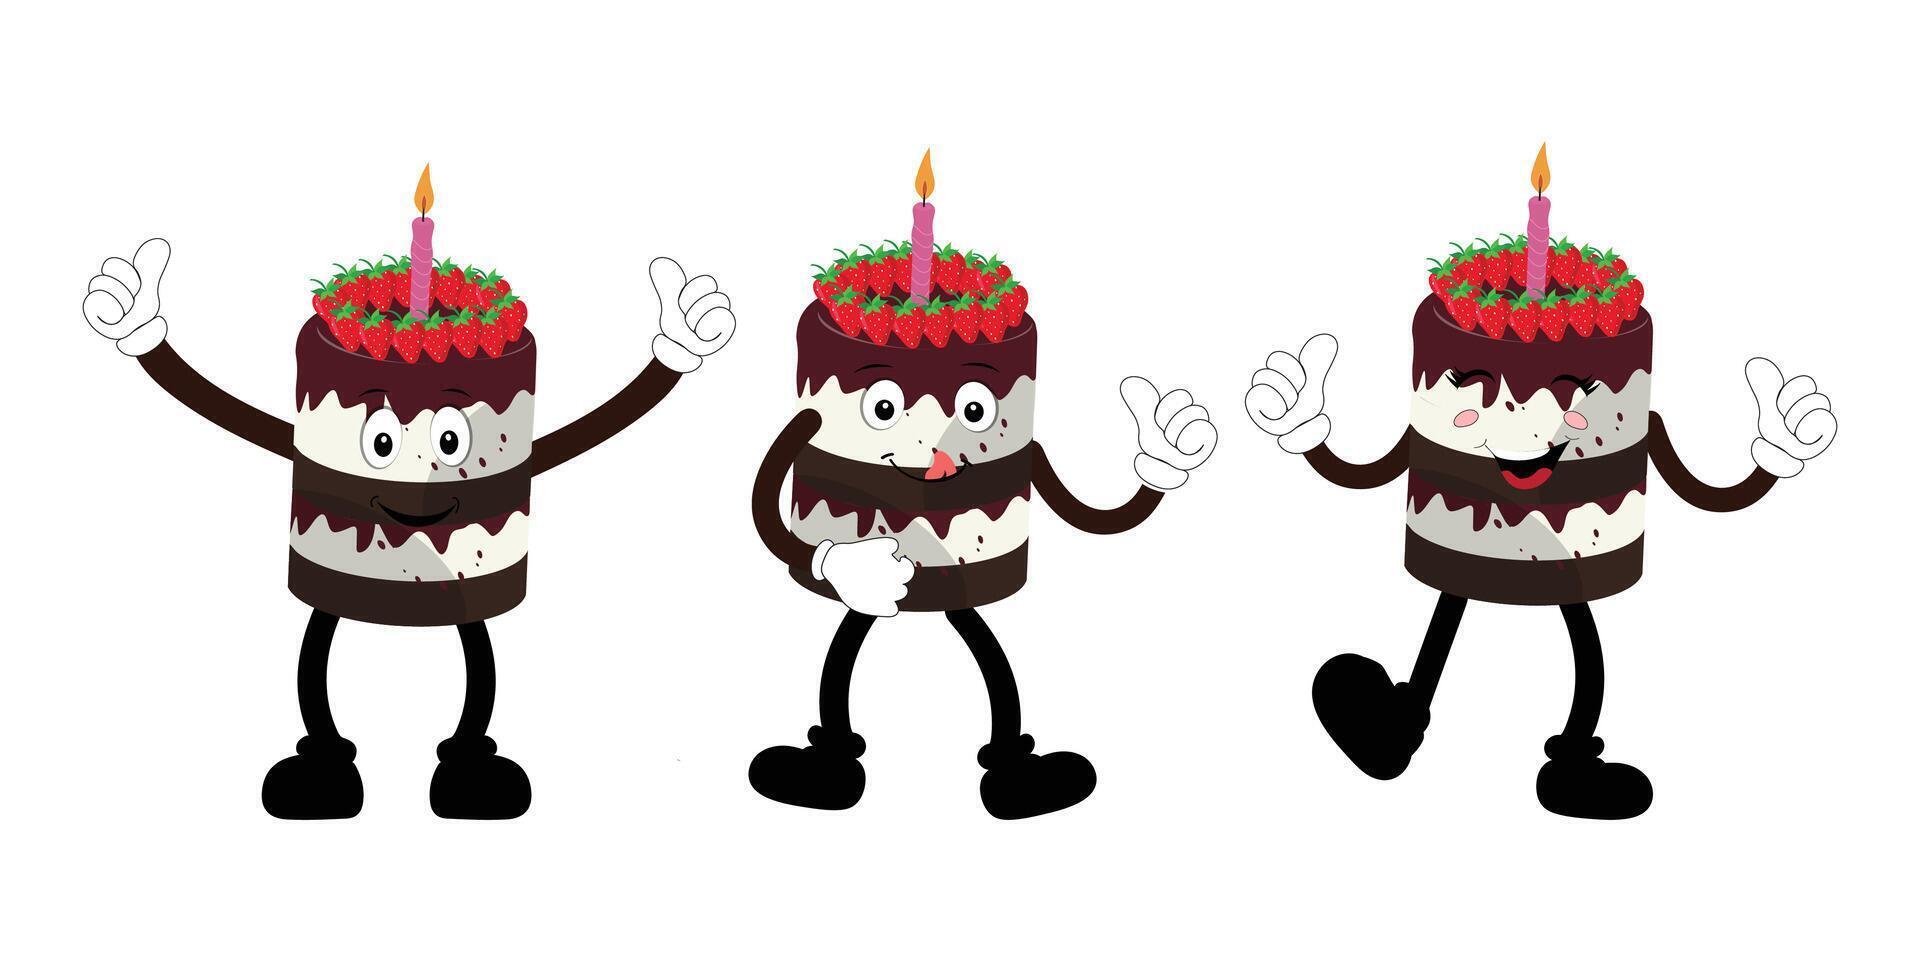 linda dulce cumpleaños pastel dibujos animados personaje diseño, Clásico personaje dibujos animados cumpleaños pastel, retro pegatina de contento chocolate pastel con velas vector